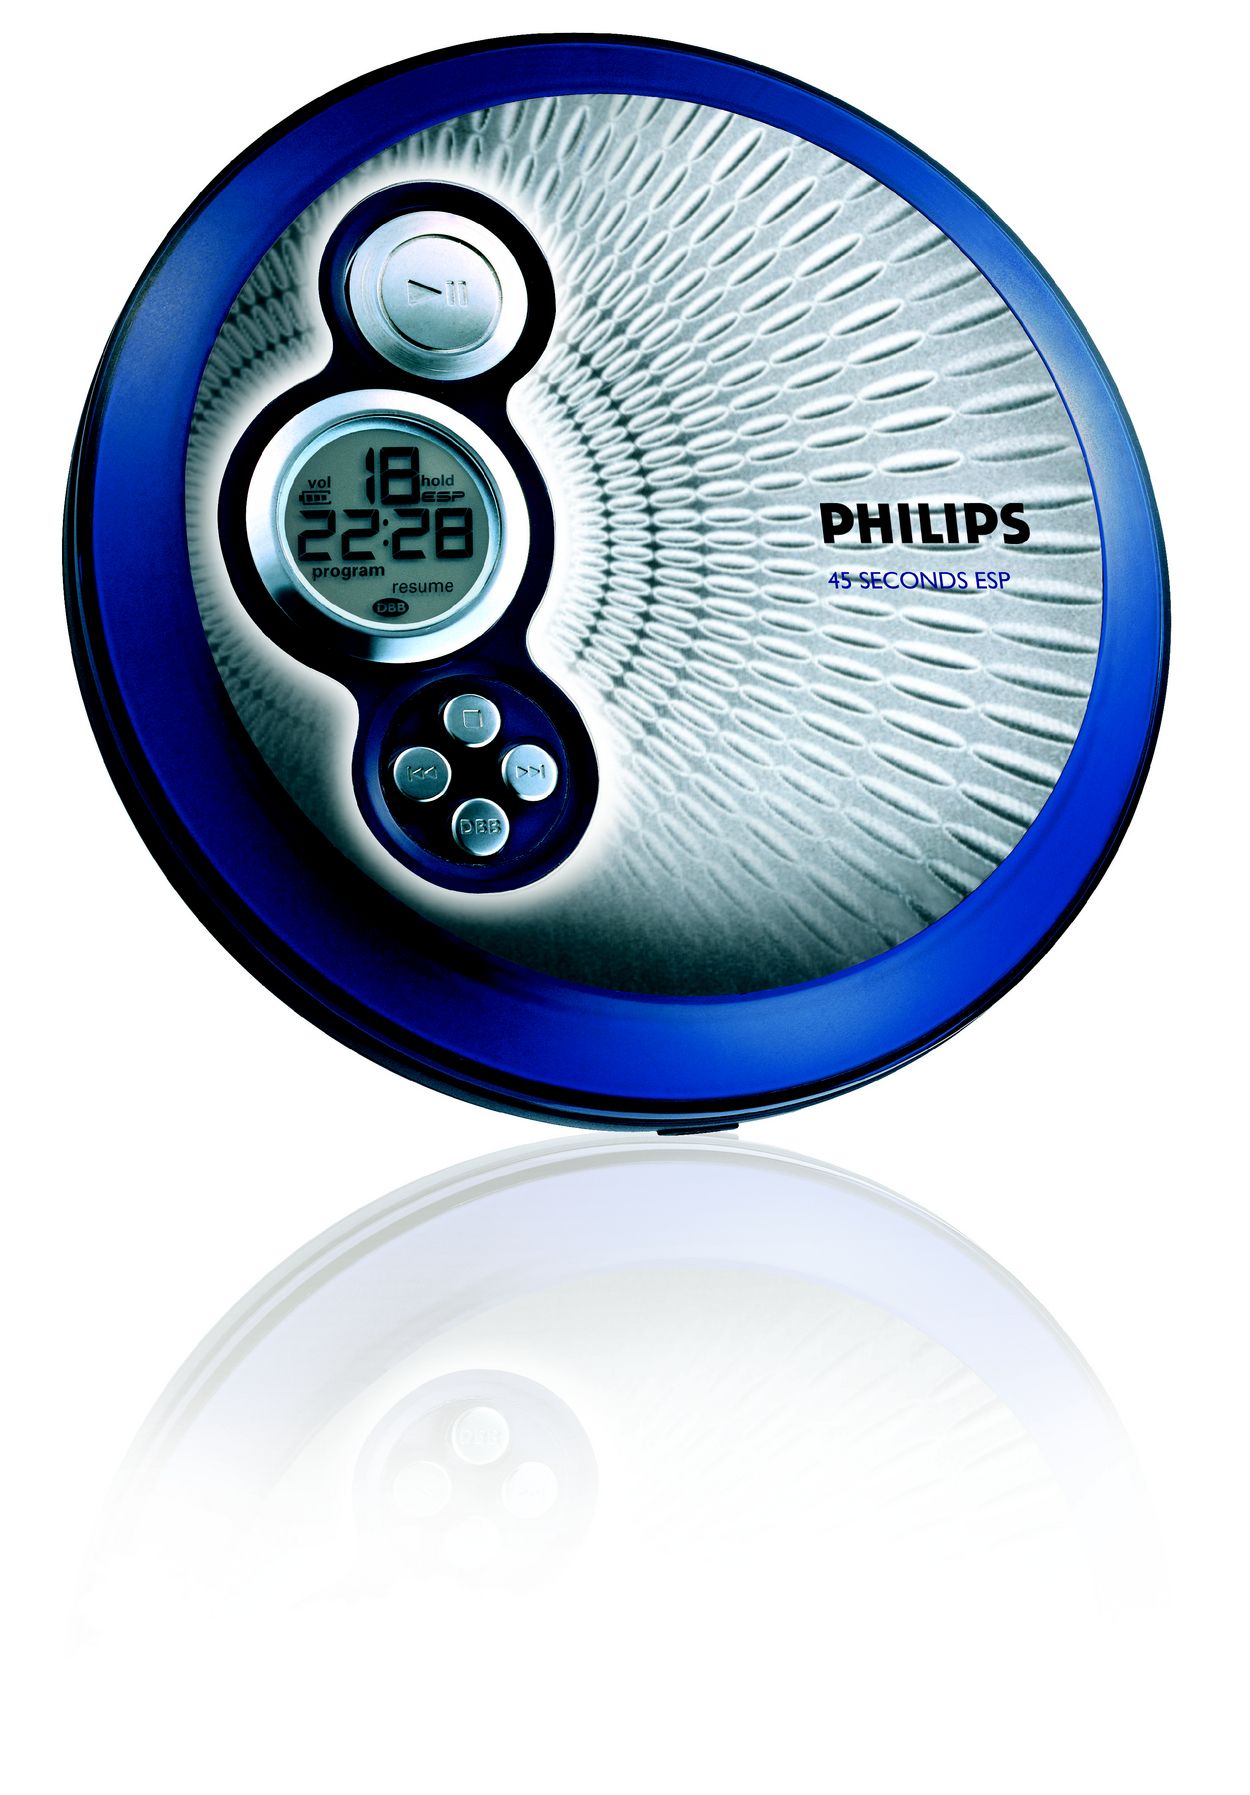 rijk Enten Voel me slecht Portable CD Player AX2420/17 | Philips